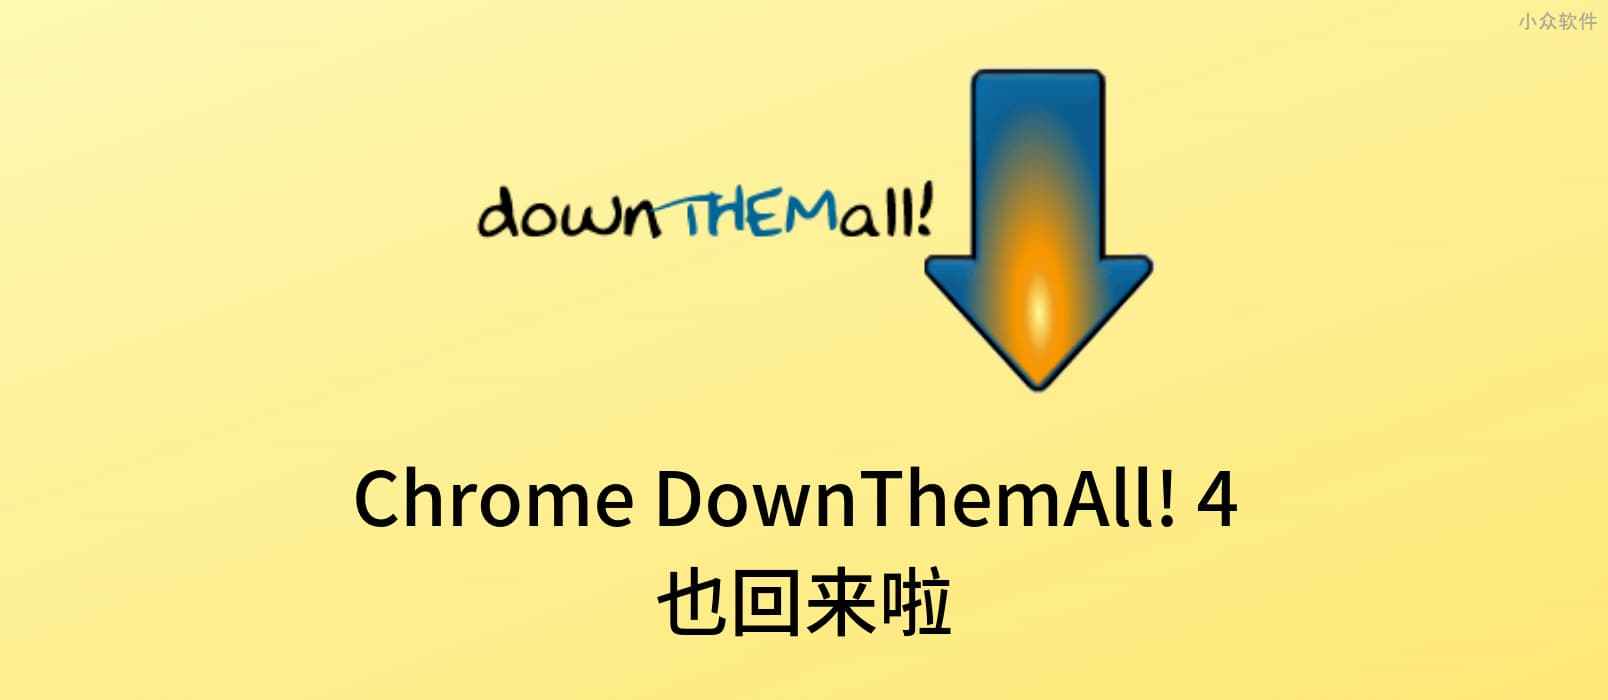 著名浏览器下载增强插件 DownThemAll! 4 发布 Chrome、Opera 版本 1